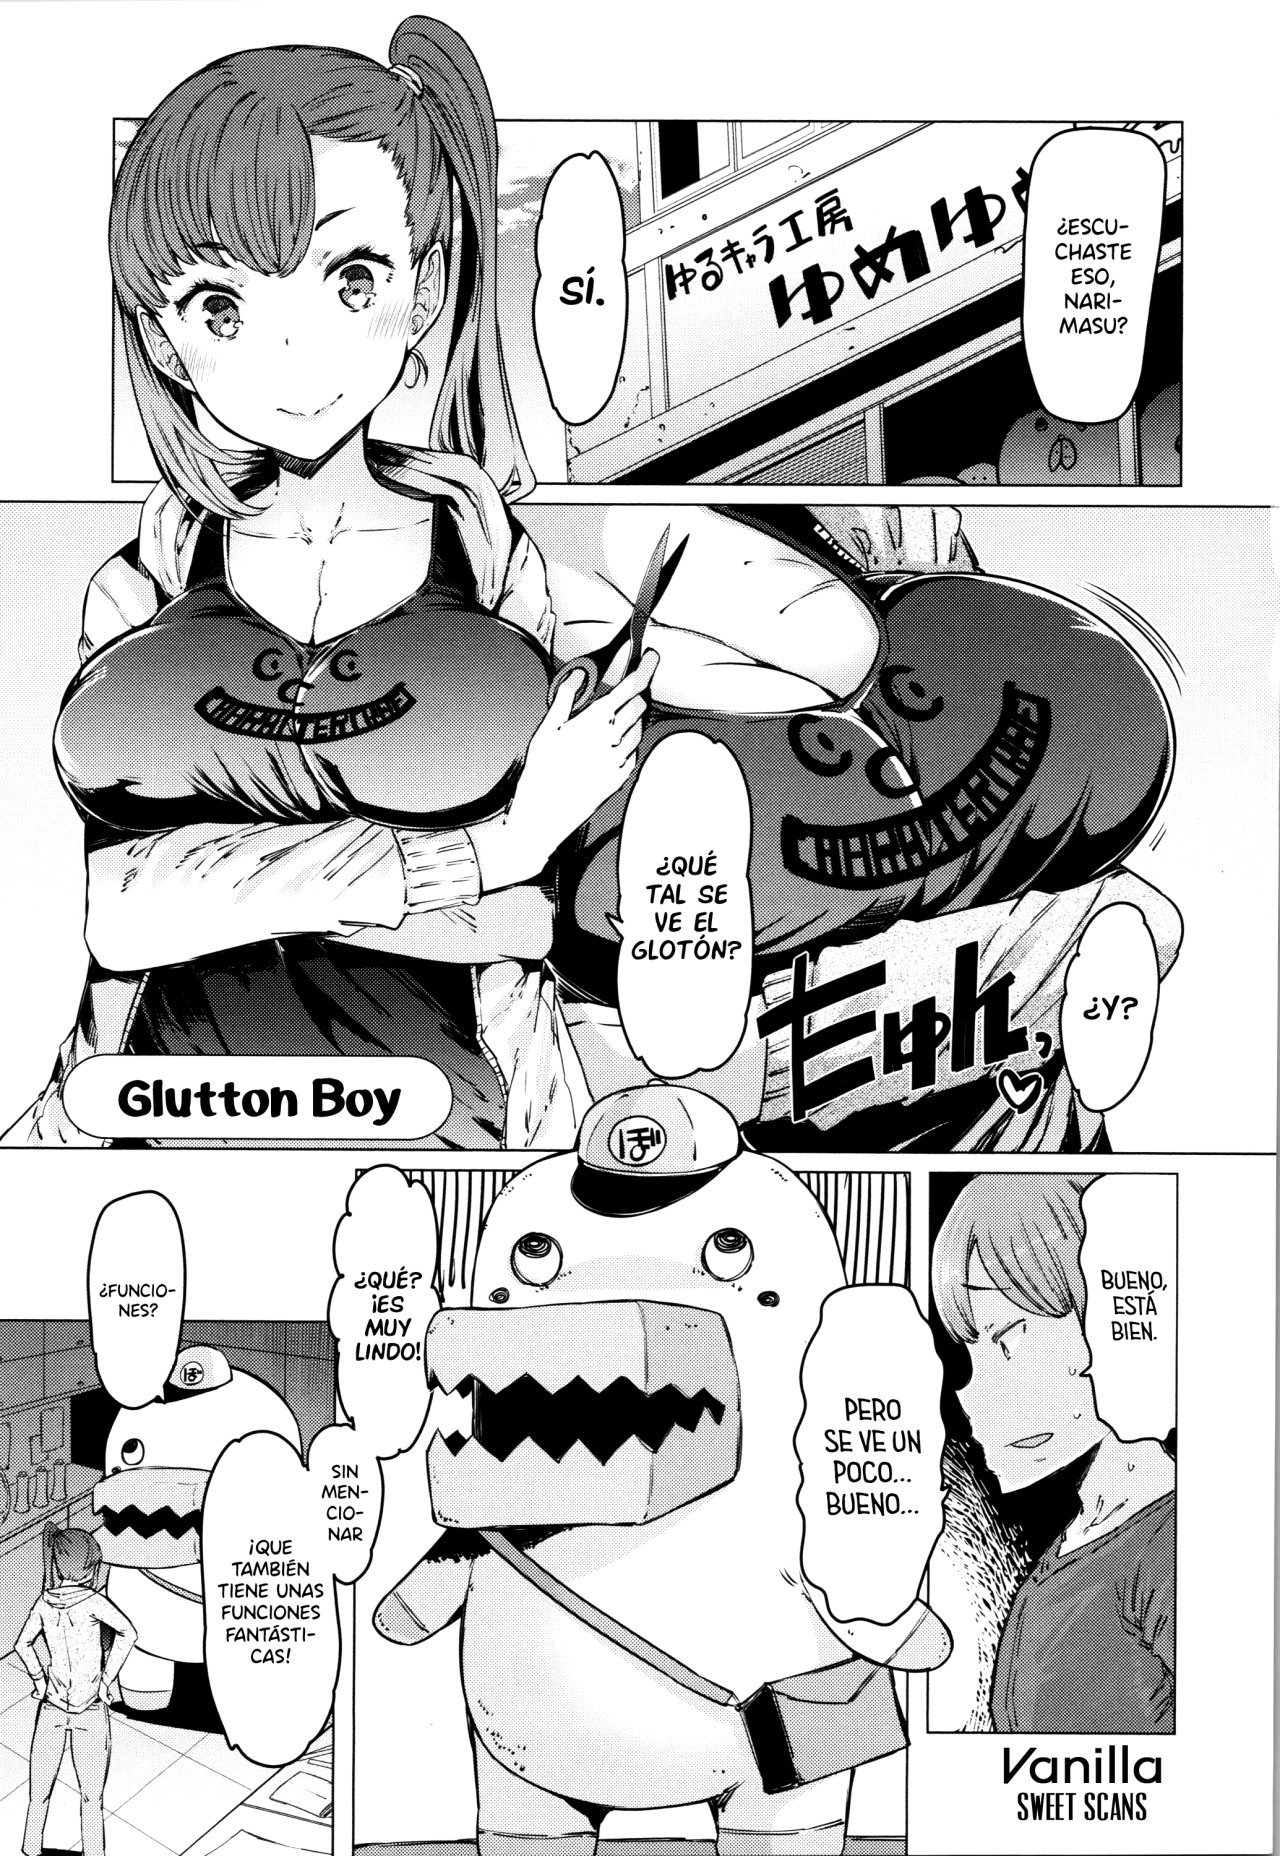 glutton Boy - 0